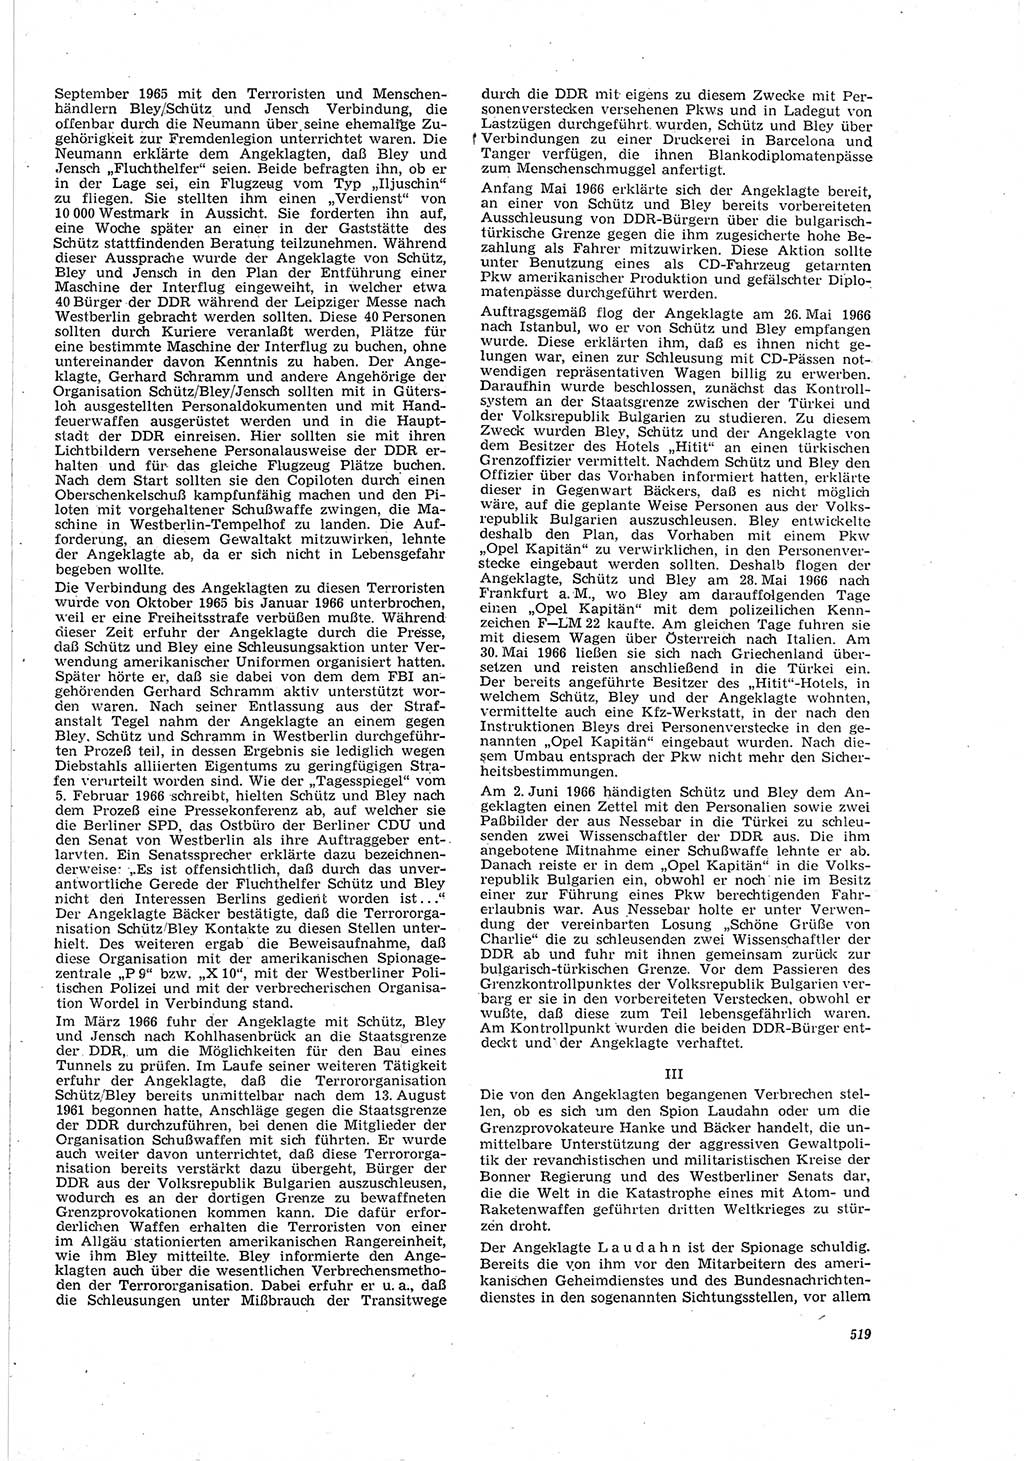 Neue Justiz (NJ), Zeitschrift für Recht und Rechtswissenschaft [Deutsche Demokratische Republik (DDR)], 20. Jahrgang 1966, Seite 519 (NJ DDR 1966, S. 519)